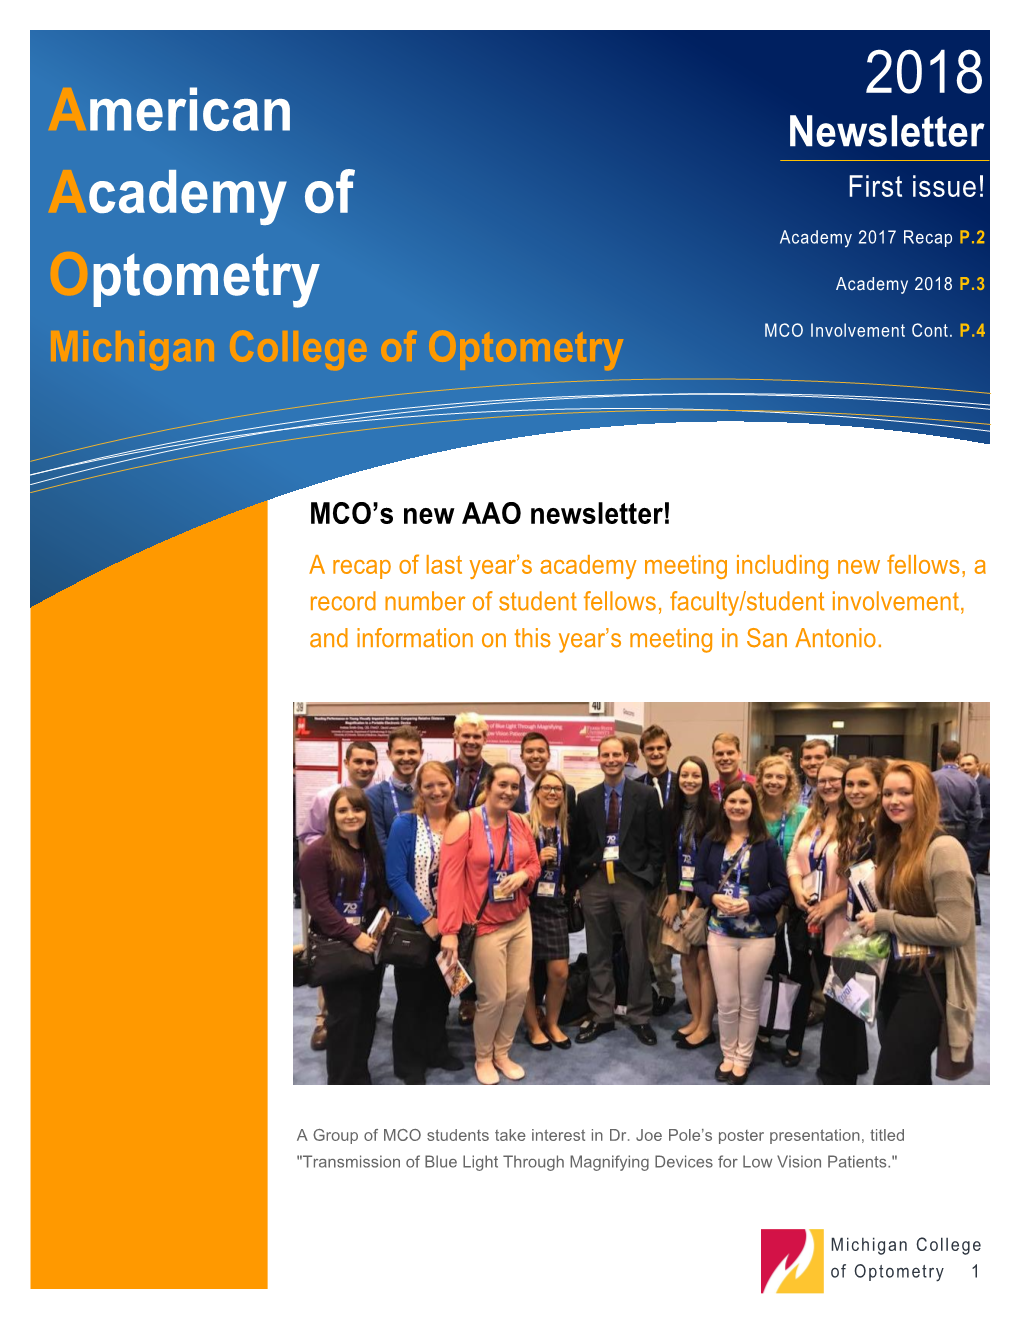 American Academy of Optometry 2018